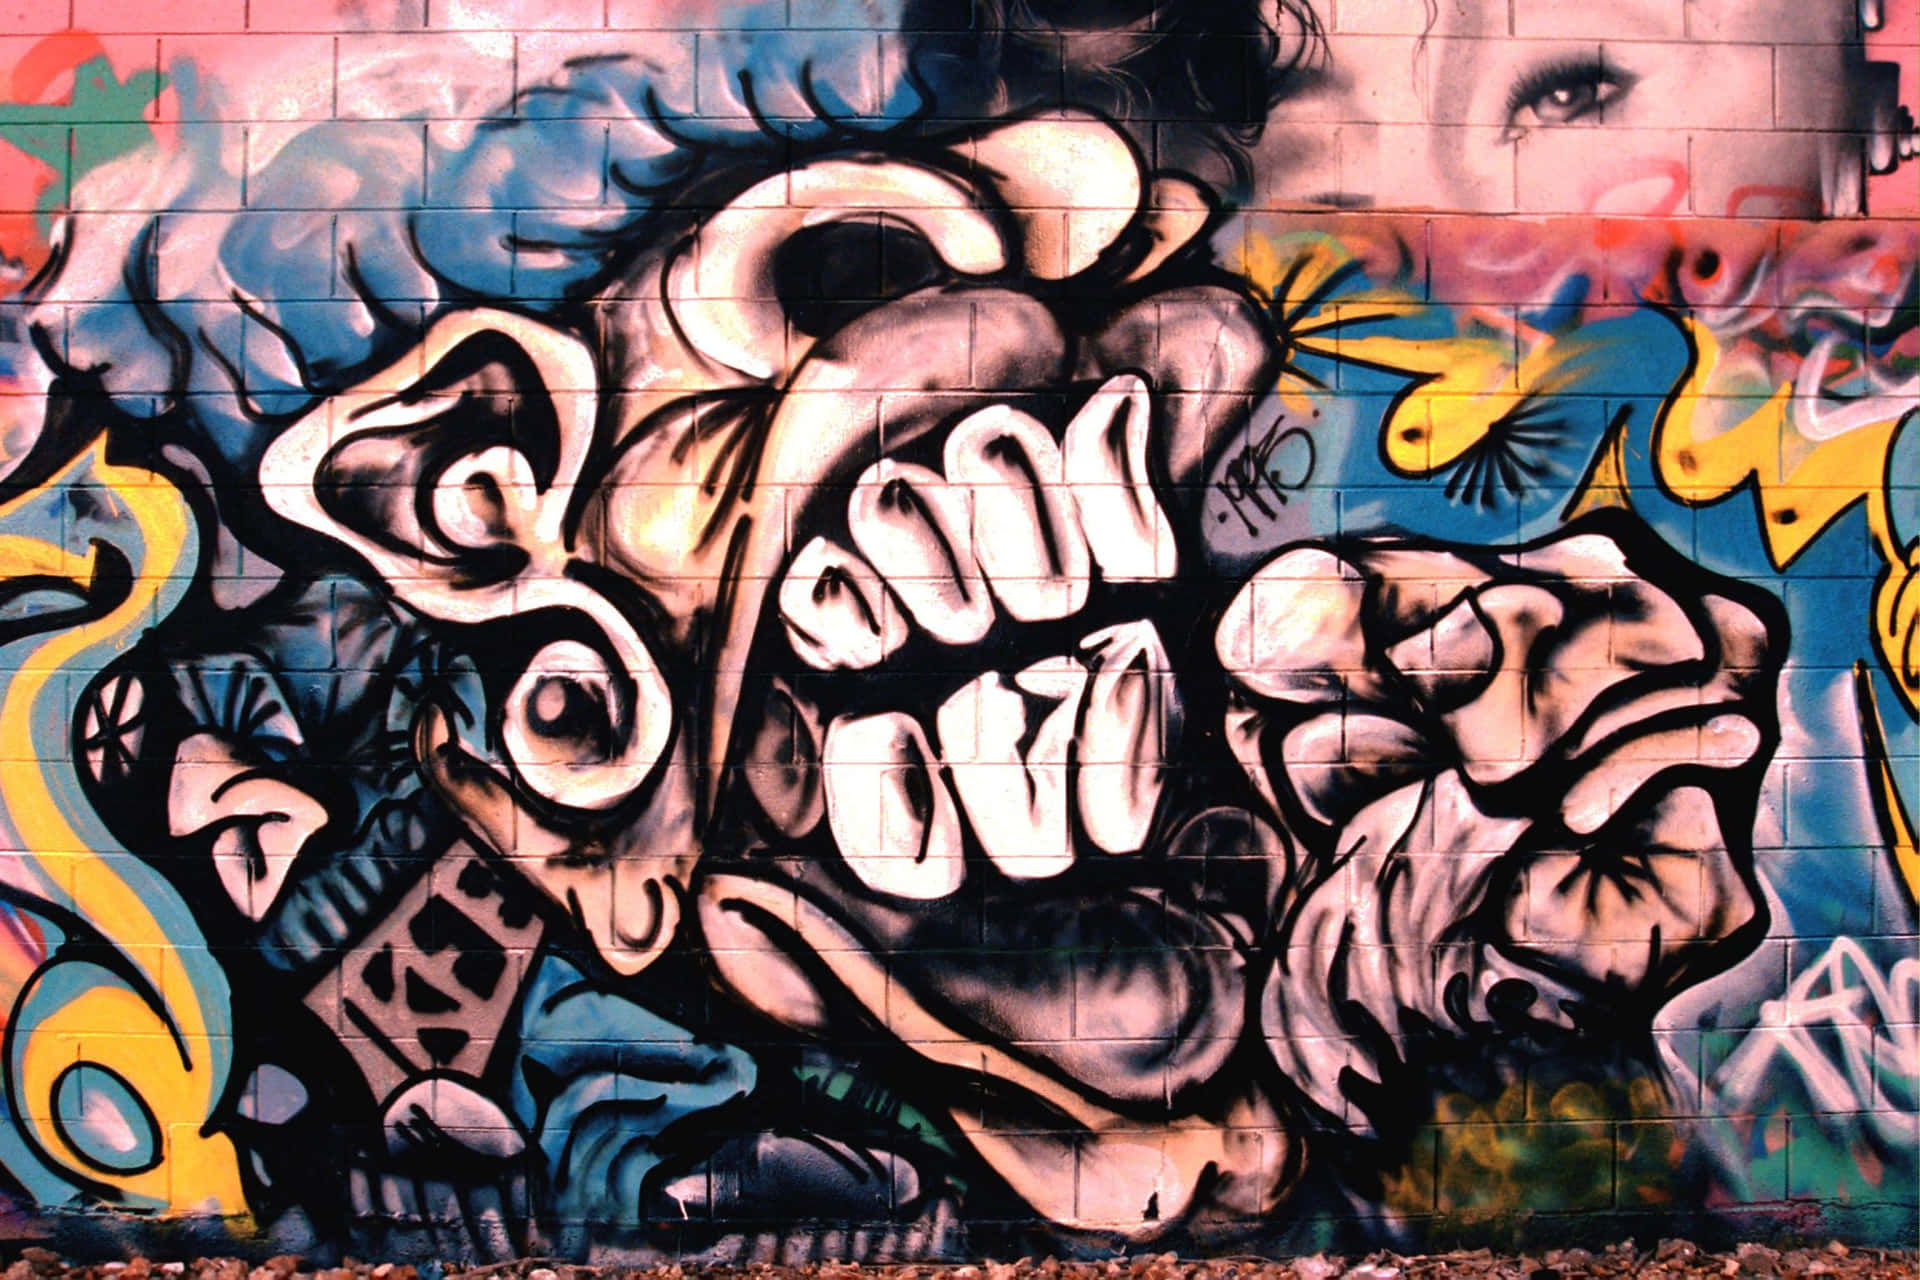 Graffiti Wall Art Featuring A Monster Head Background